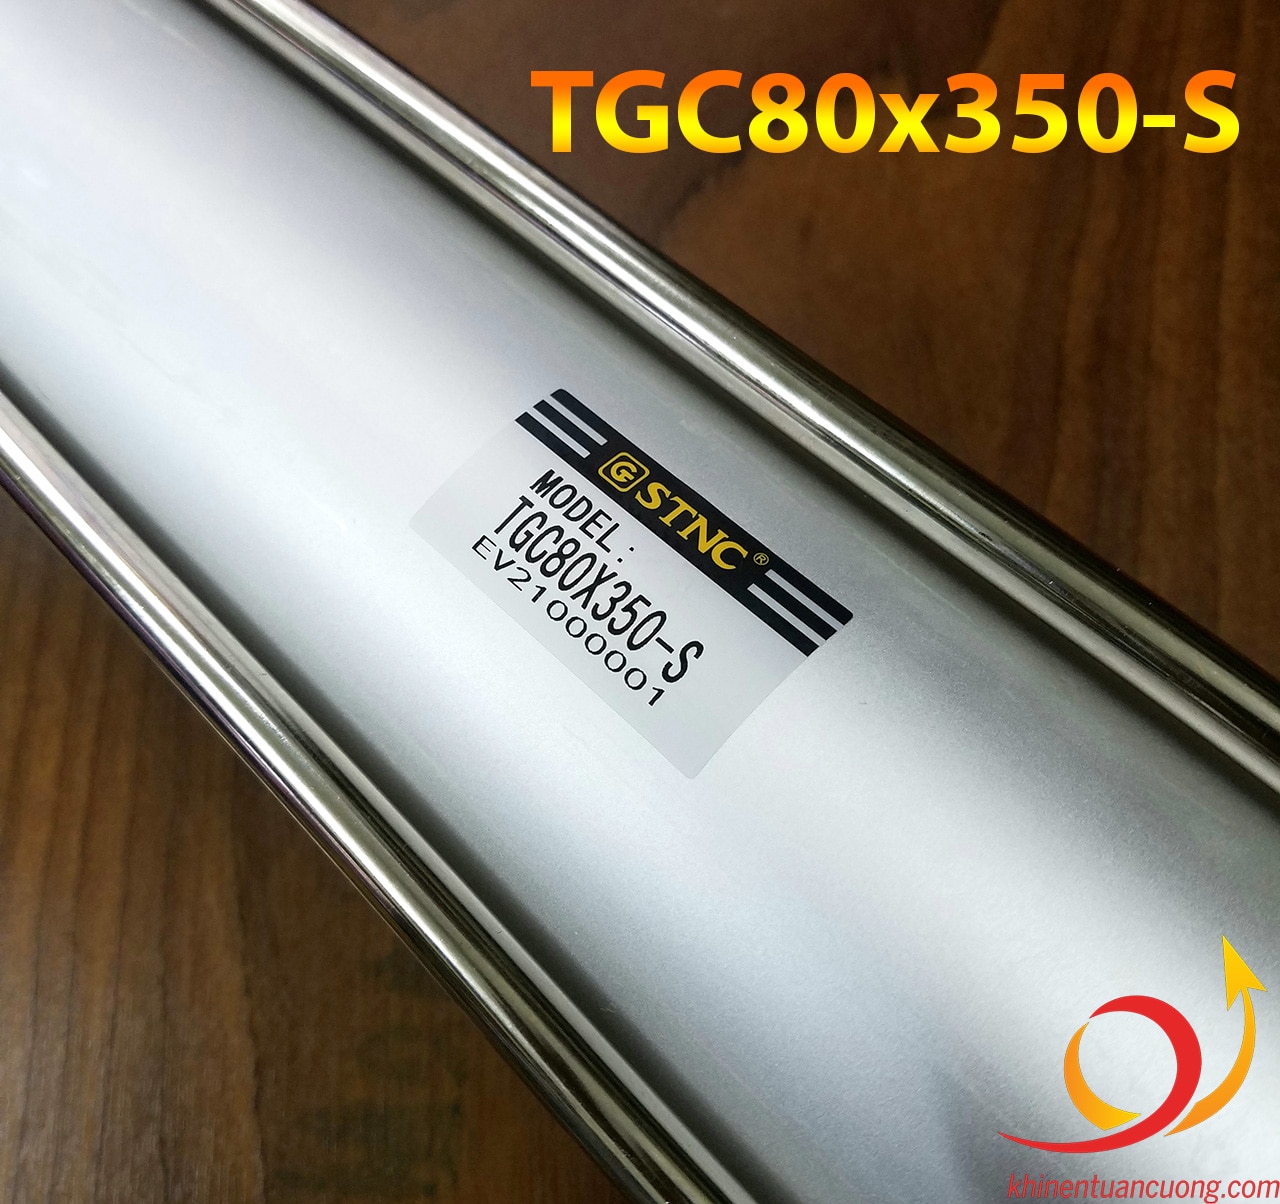 Hình đại diện Xi lanh chất lượng TGC80x350-S STNC có từ